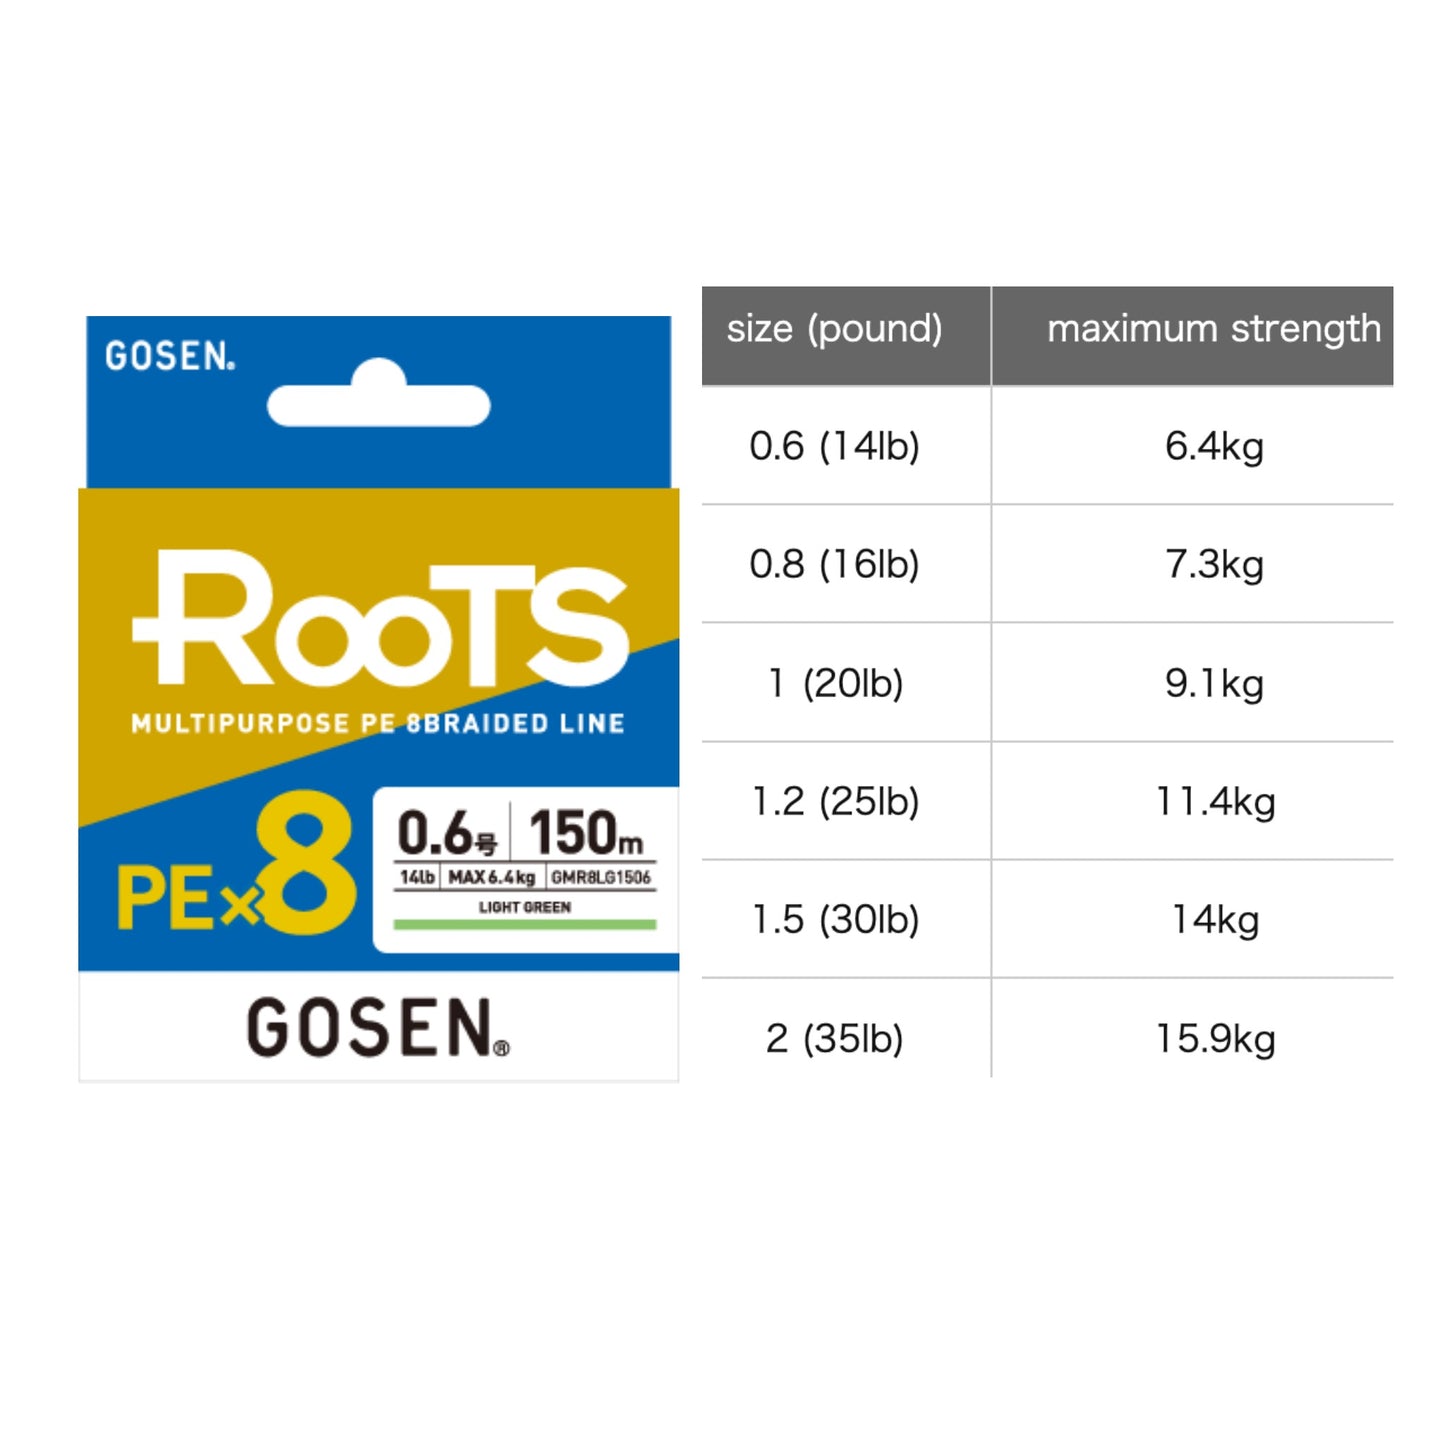 Gosen Roots PEX8 150m  